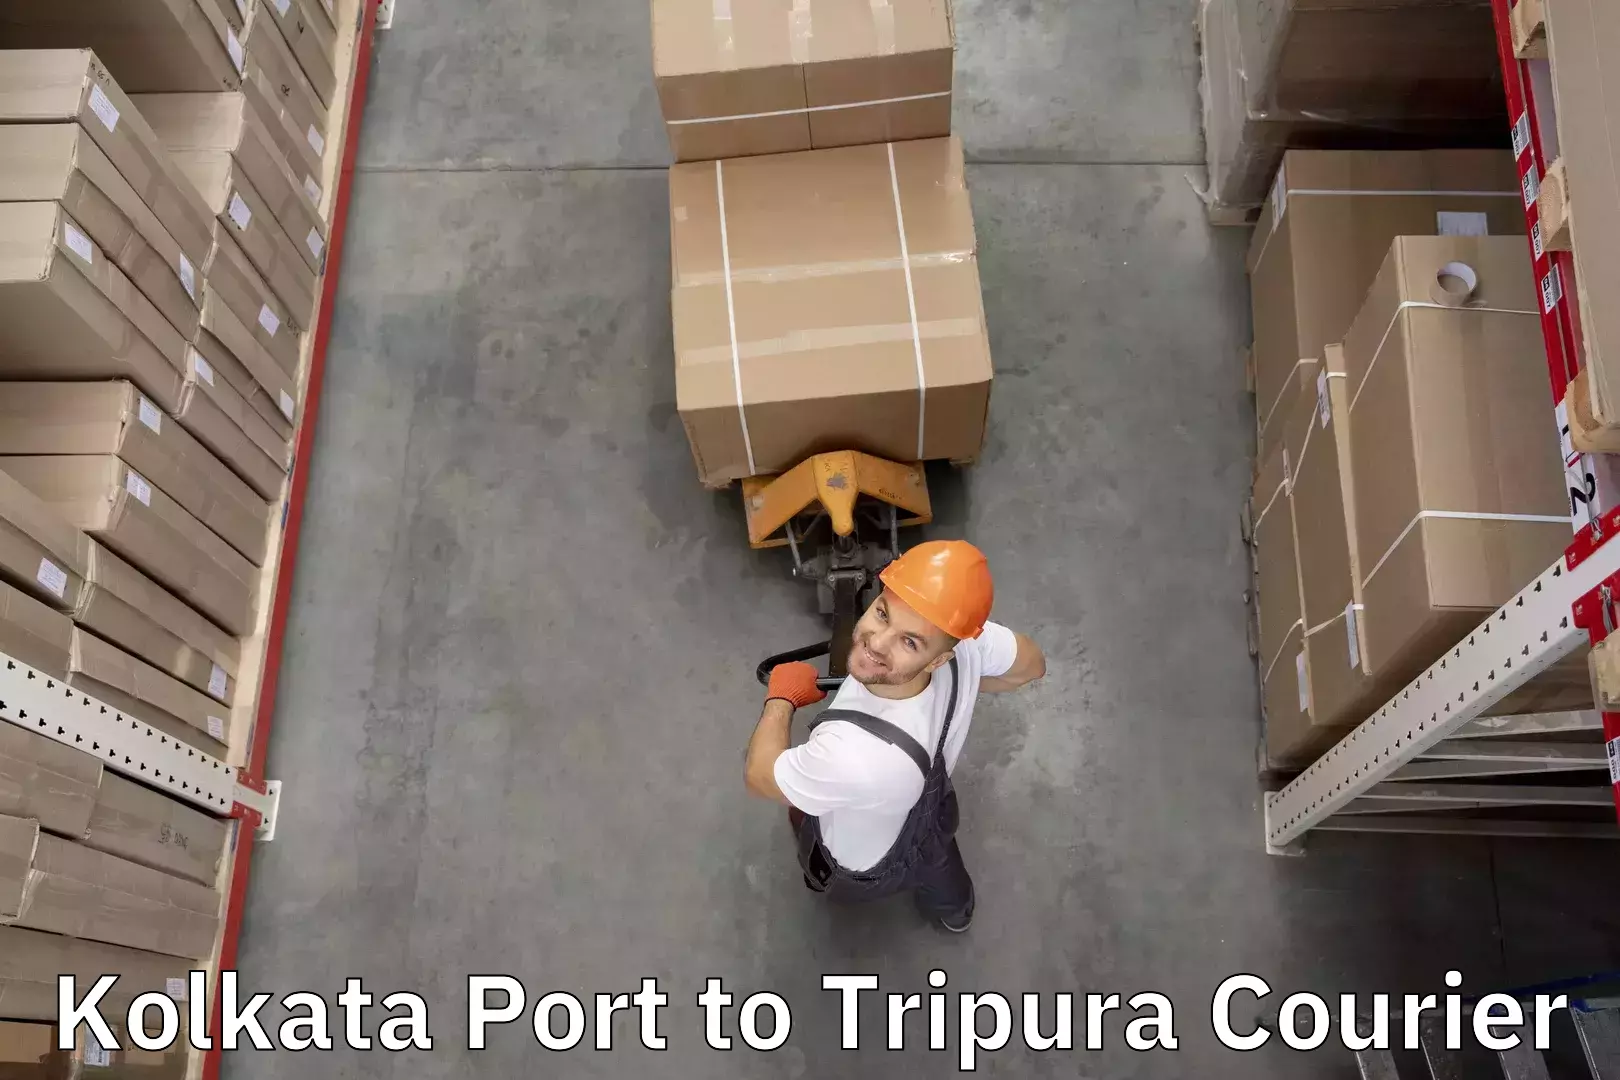 Reliable luggage courier Kolkata Port to Agartala